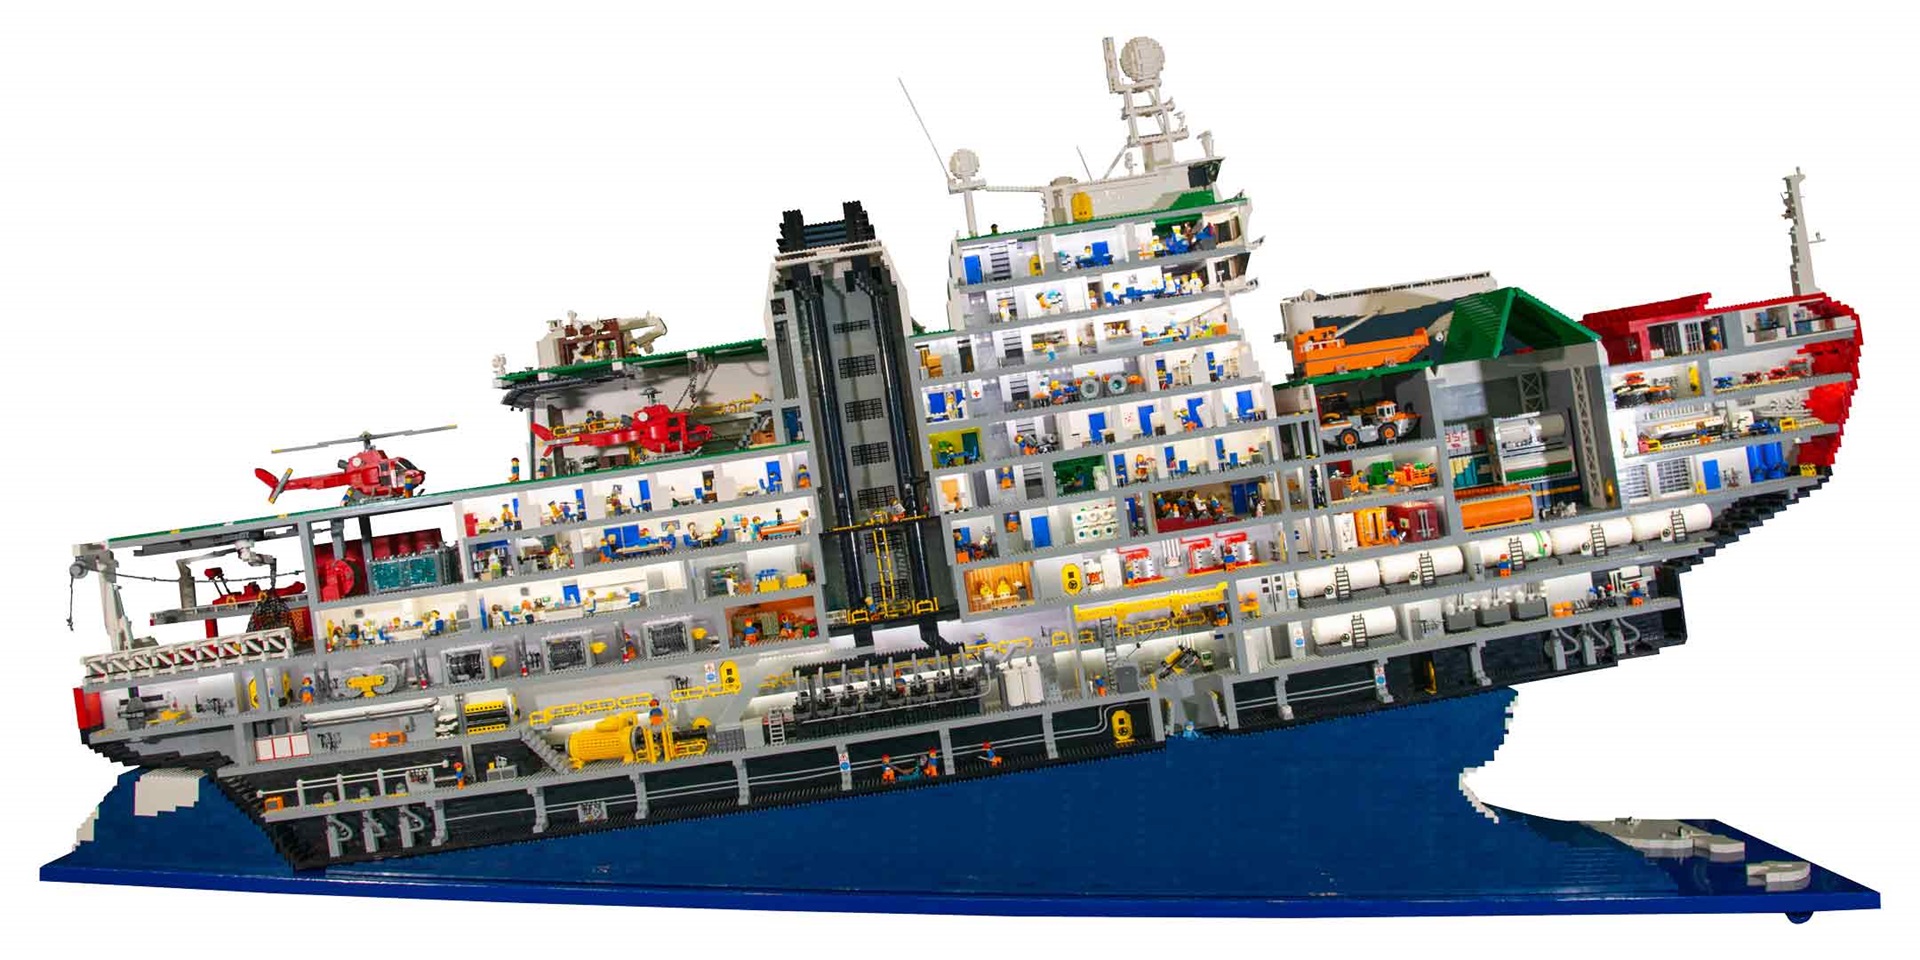 RSV Nuyina LEGO model